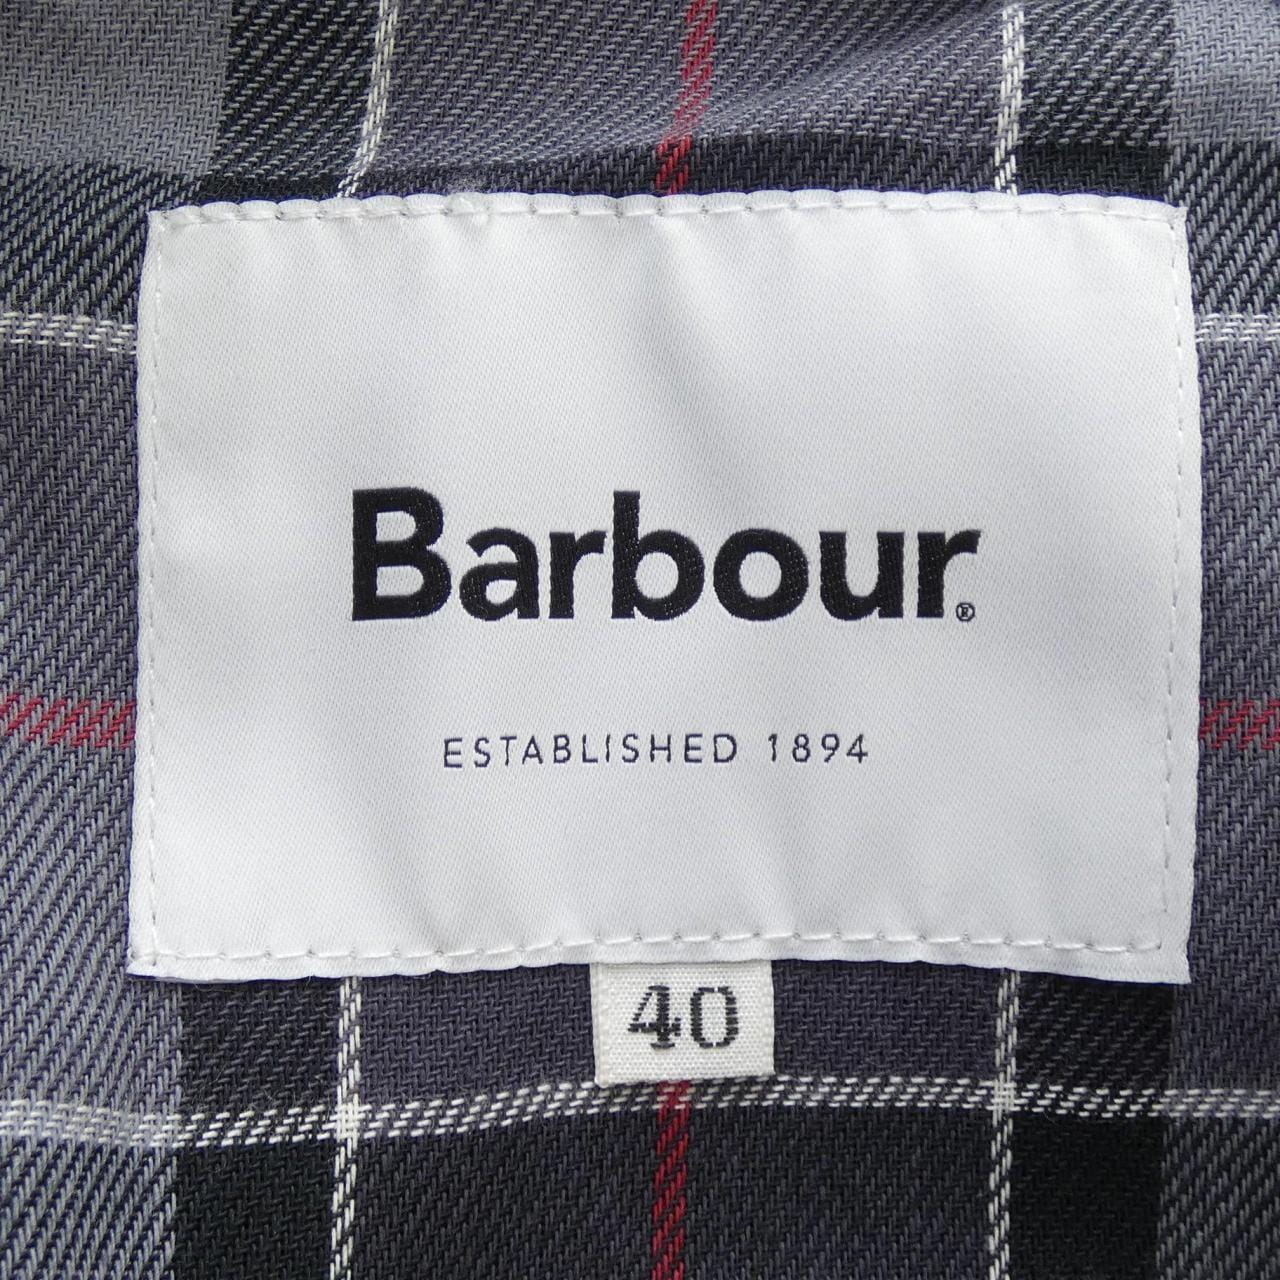 BARBOUR coat